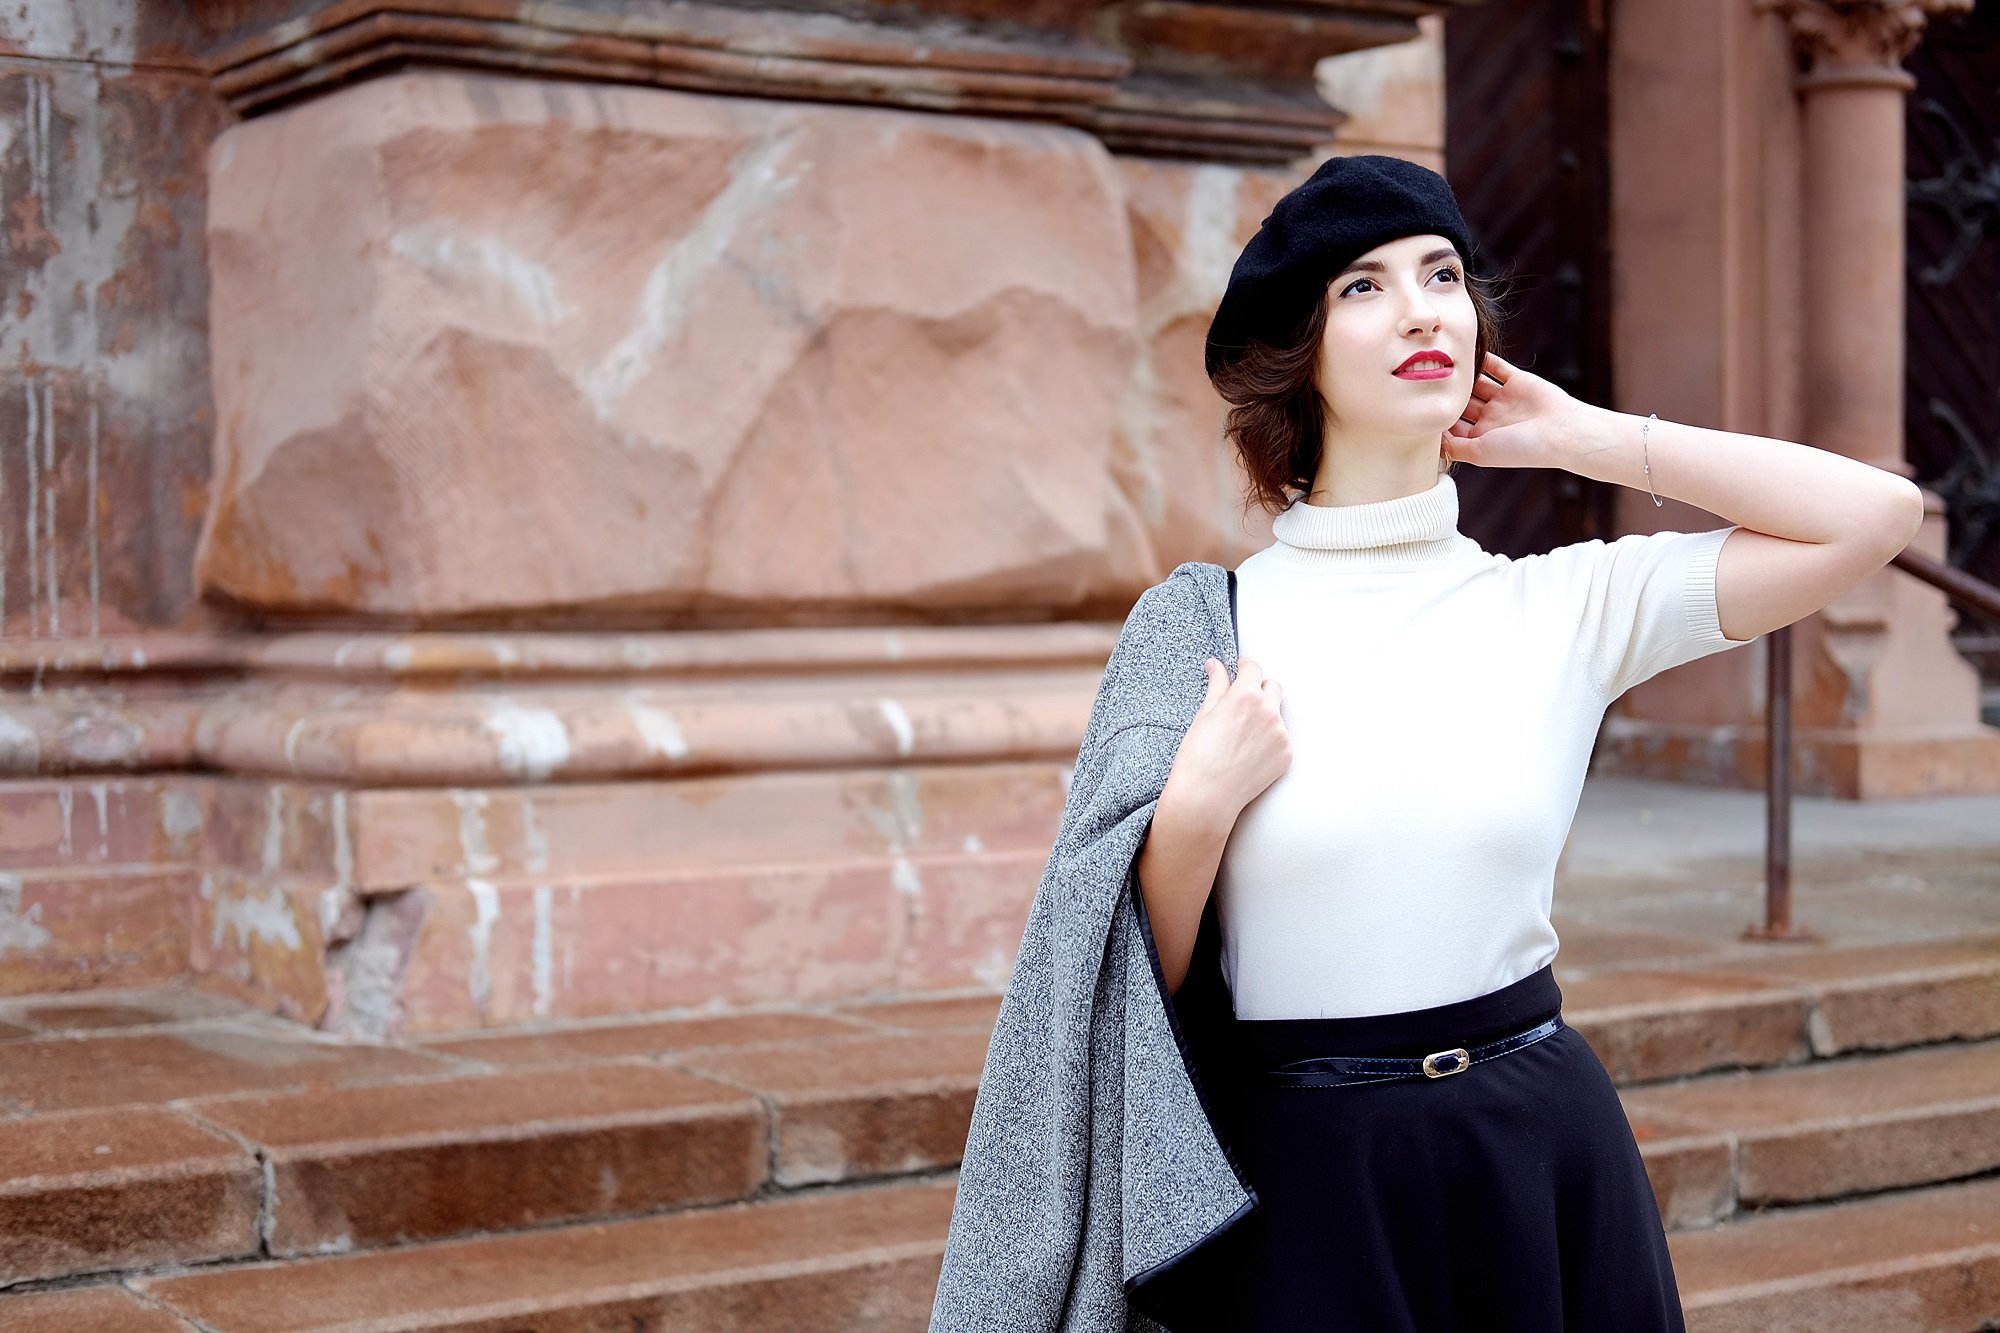 Mujer parisina con estilo minimalista. | Foto: Shutterstock